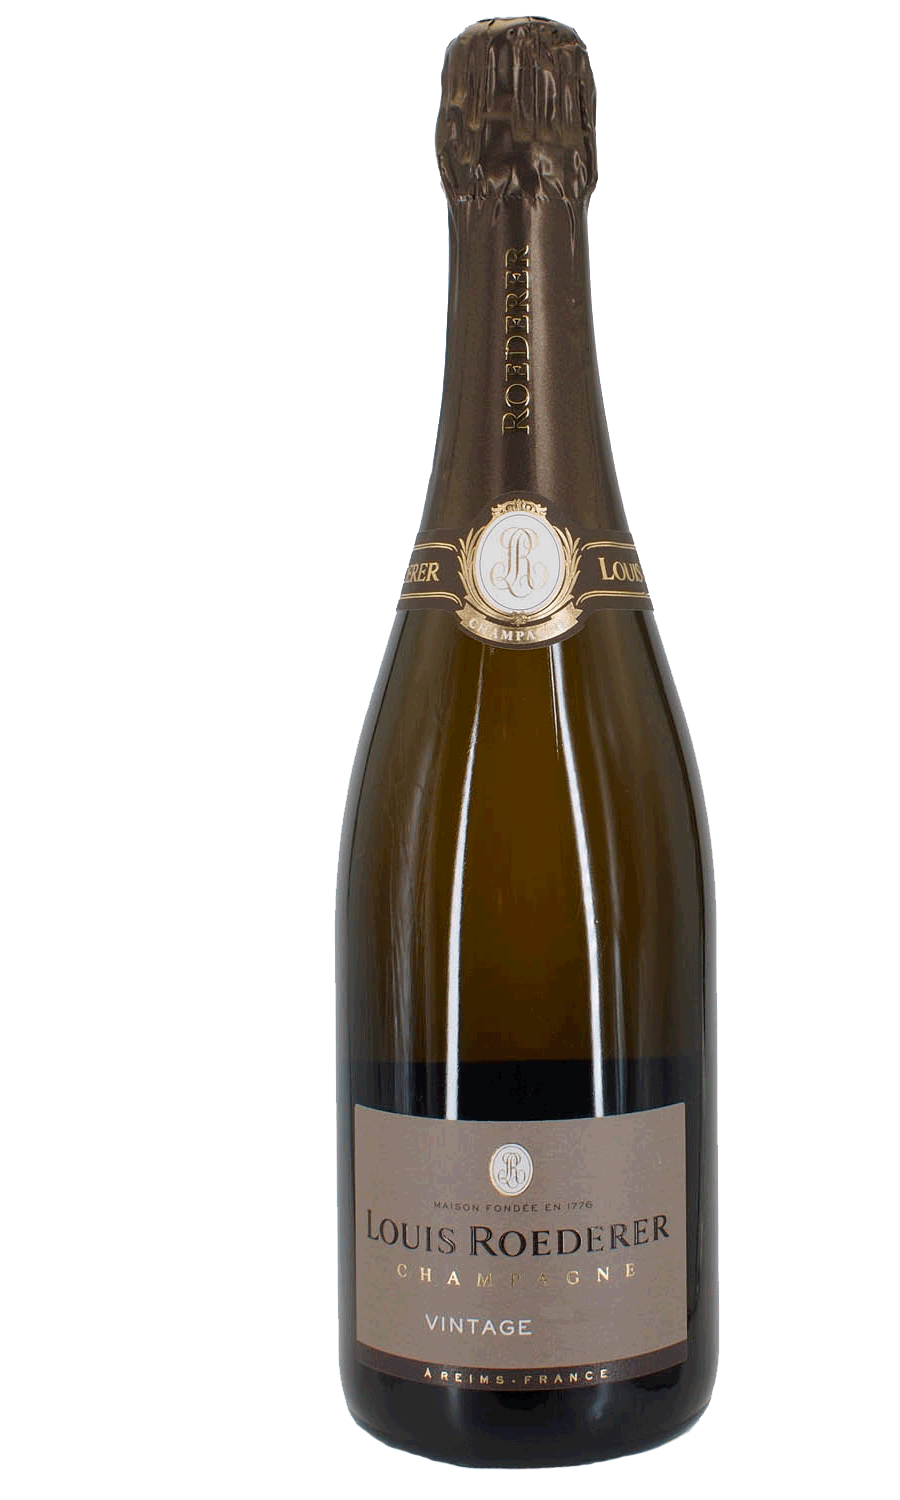 Louis Roederer Champagne Vintage brut